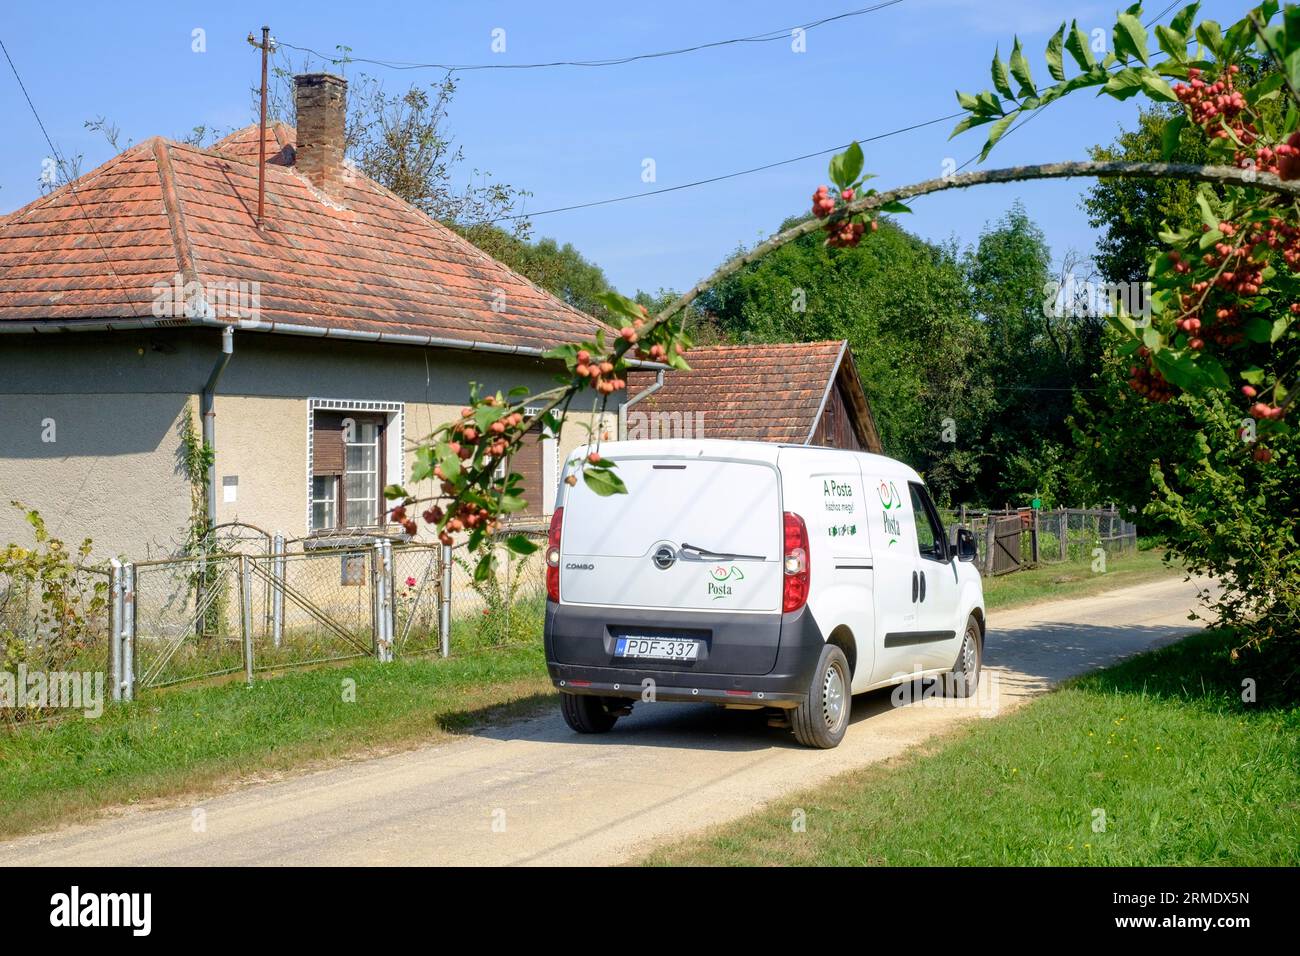 hongrois posta postal service livraison de courrier van rural campagne village lane hongrie Banque D'Images